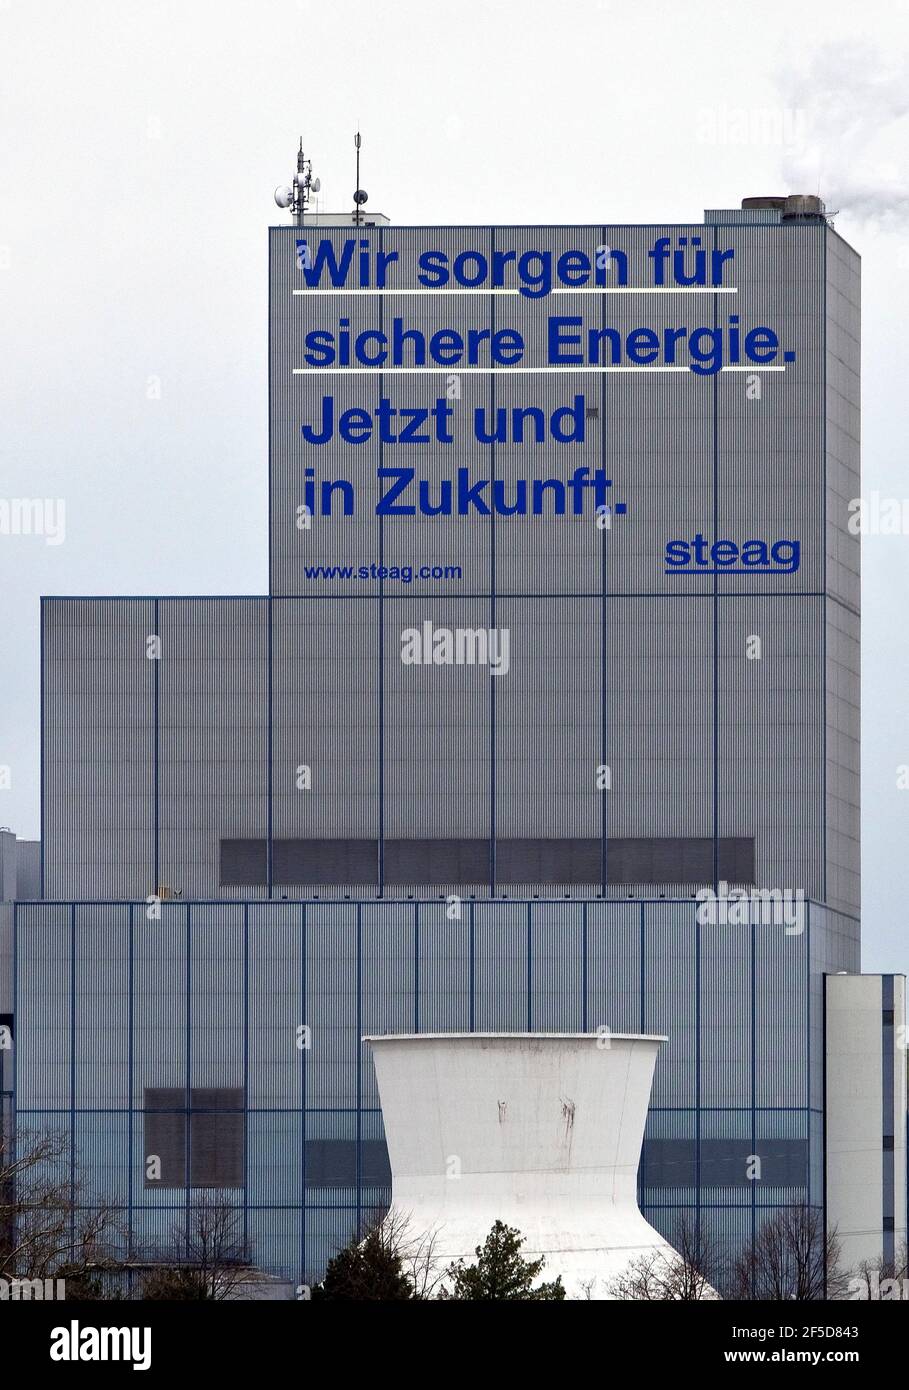 Kraftwerk Herne mit der Aussage "Wir liefern sichere Energie. Jetzt und in Zukunft"., Deutschland, Nordrhein-Westfalen, Ruhrgebiet, Herne Stockfoto